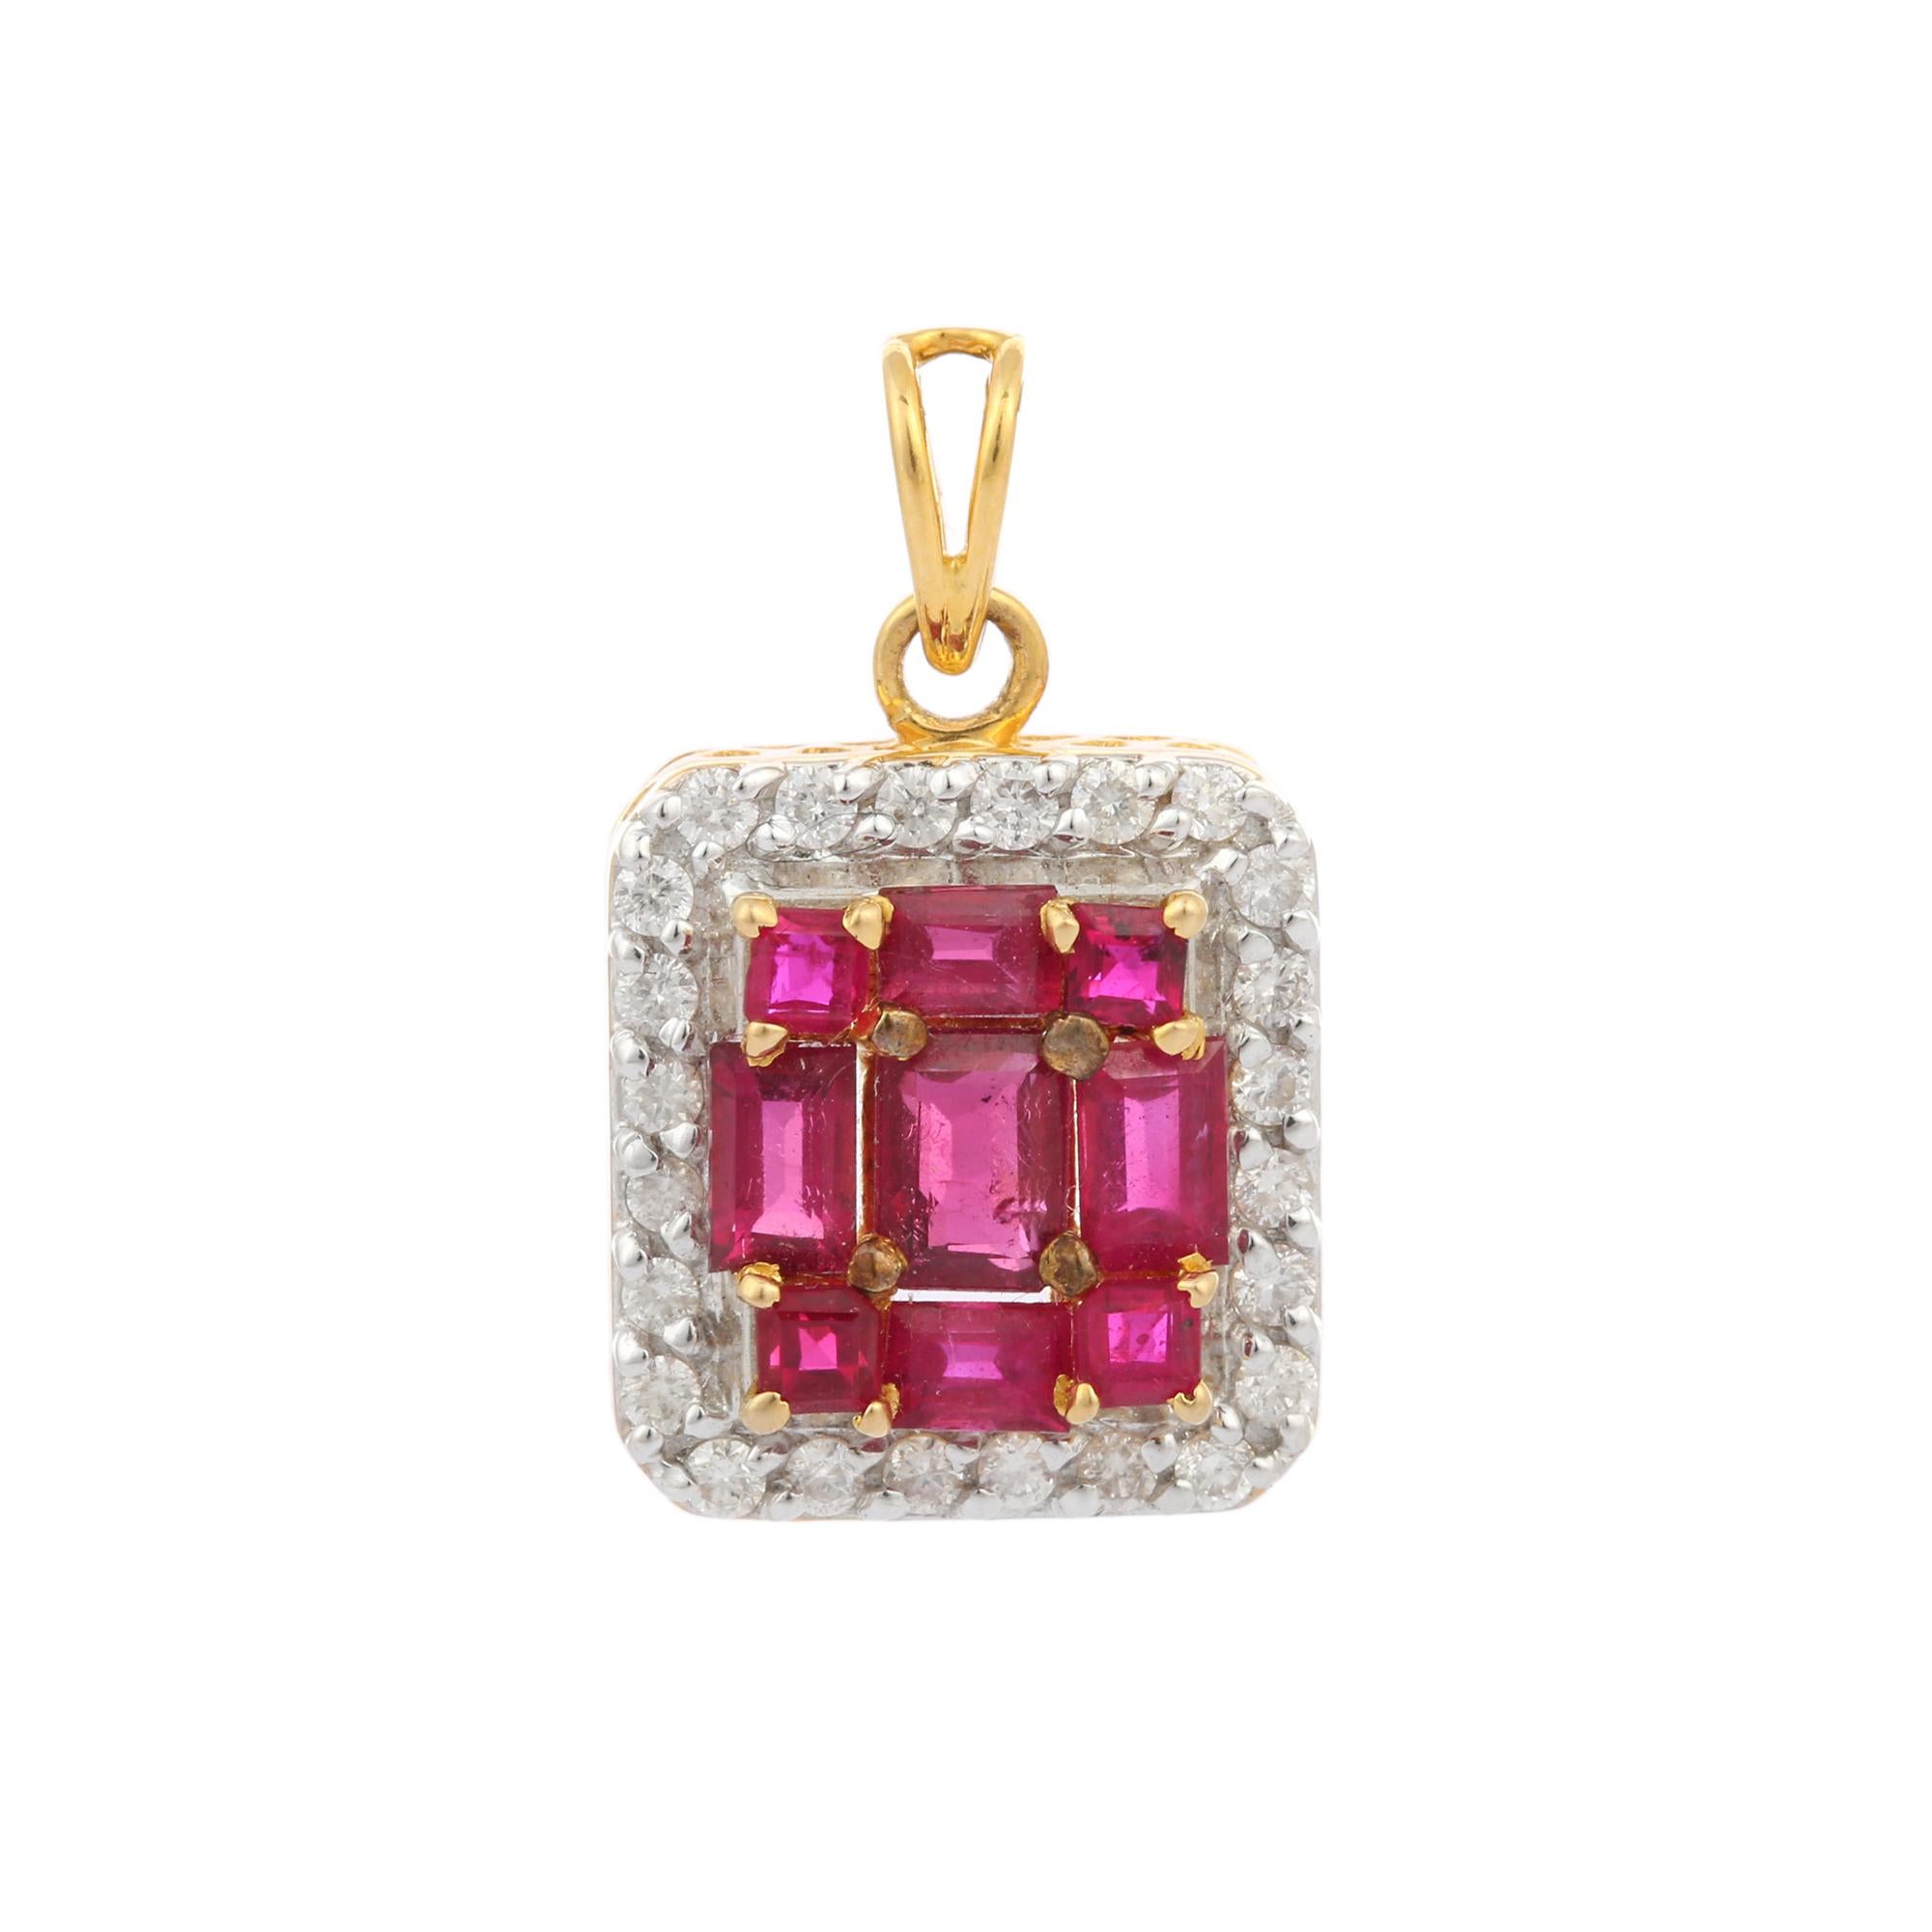 Pendentif auréolé de rubis et de diamants en or 18 carats. Elle comporte un rubis de taille octogonale et carrée avec des diamants en halo qui complètent votre look avec une touche décente. Les pendentifs sont utilisés pour être portés ou offerts